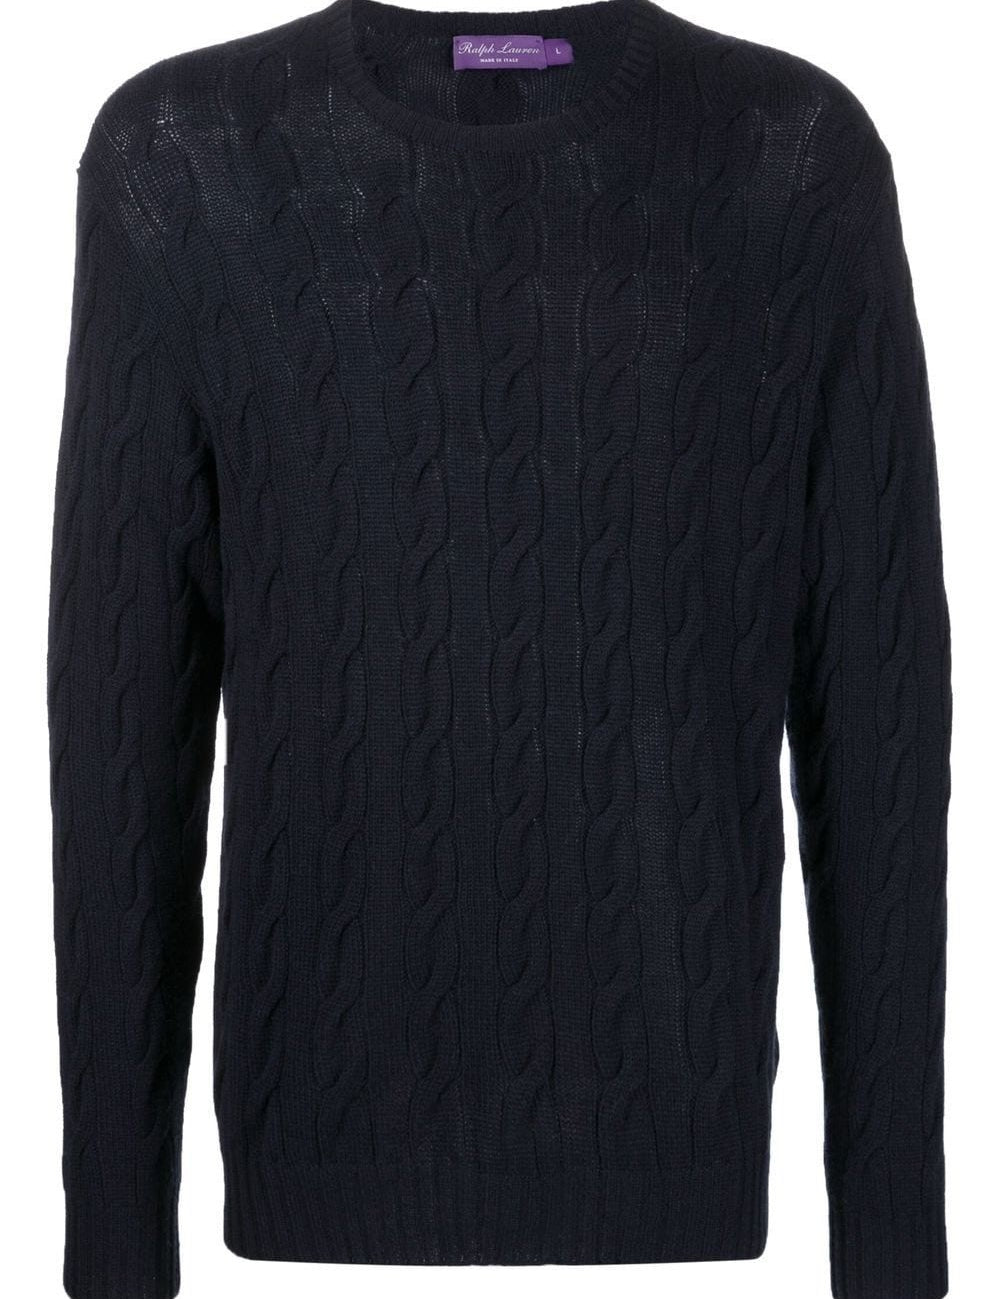 long-sleeve-sweater_2b7a4bd0-0c26-4a0e-8d71-a3f1a7a6e828.jpg